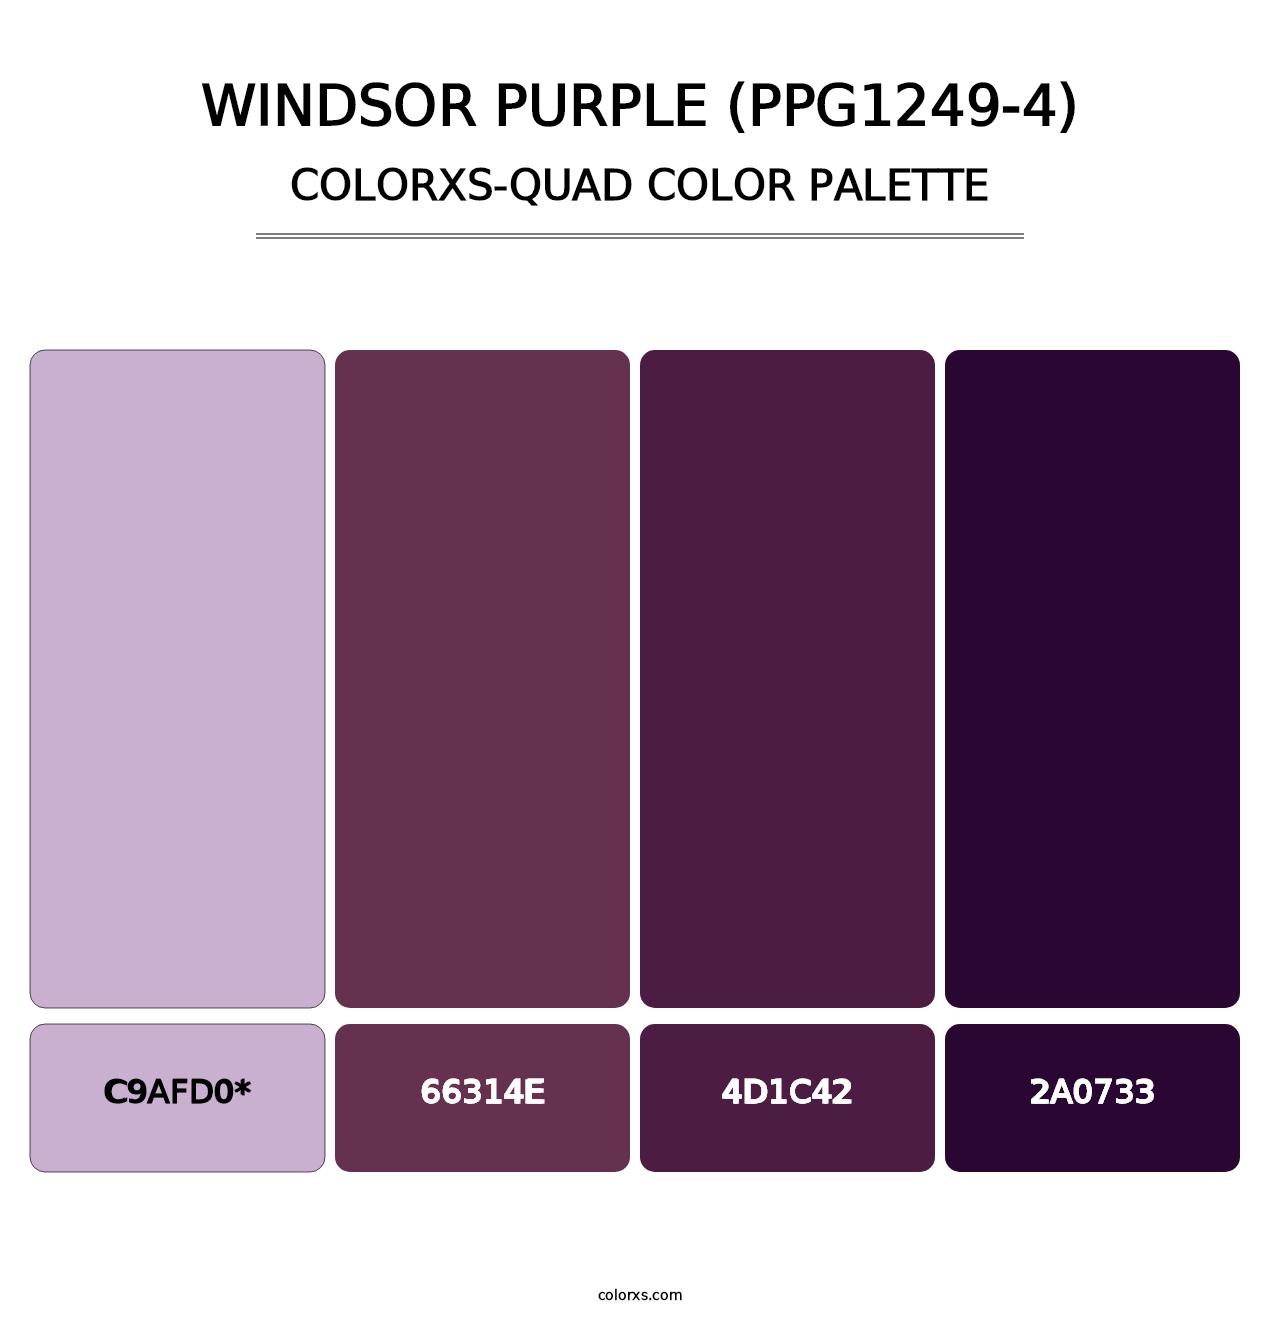 Windsor Purple (PPG1249-4) - Colorxs Quad Palette